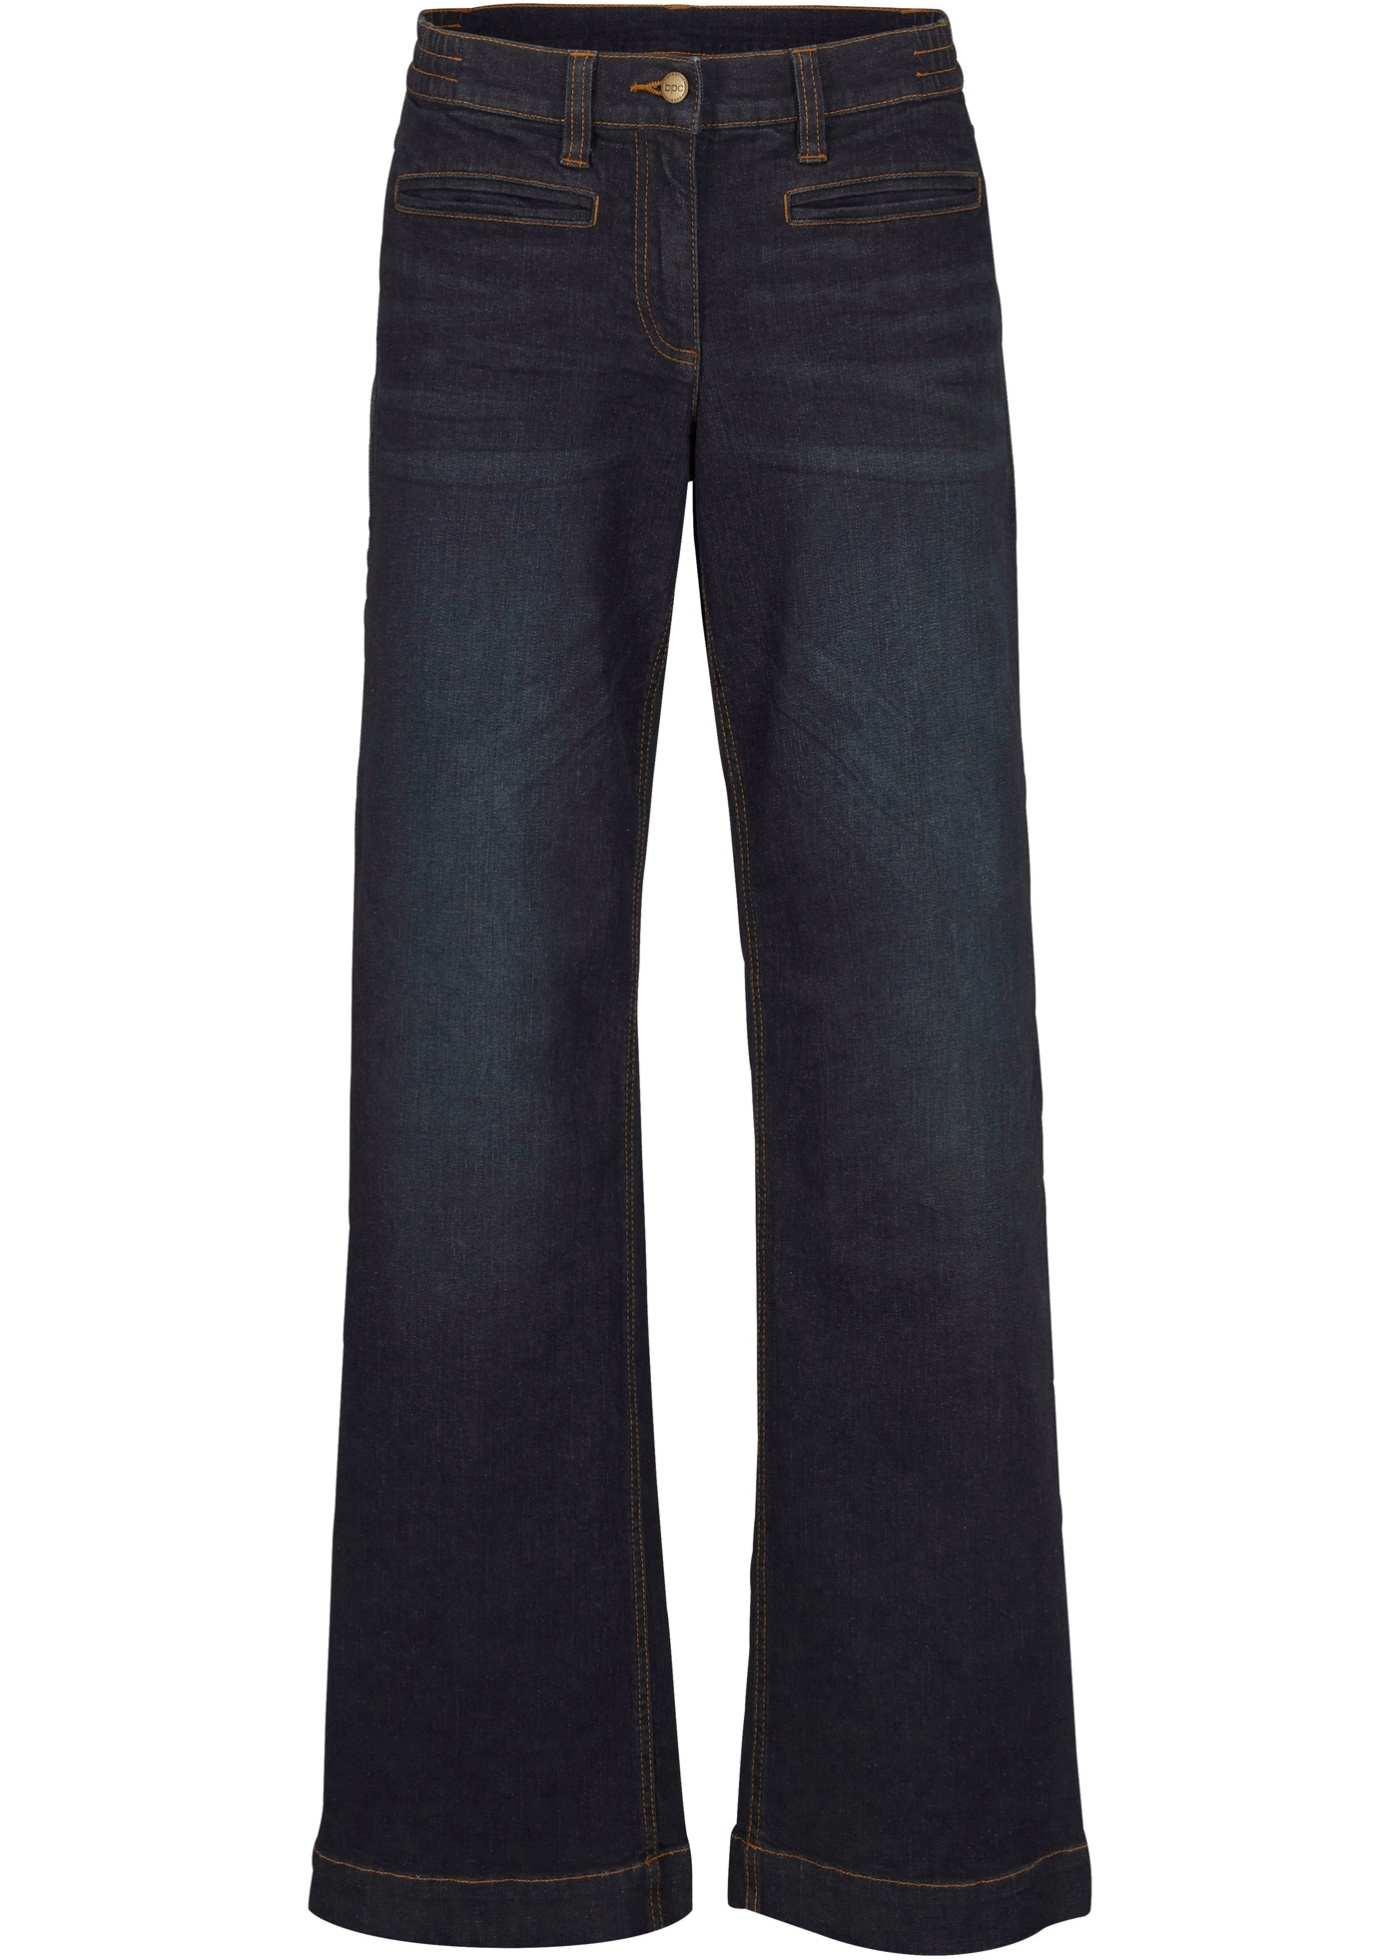 Jean coton avec taille confortable, style Marlène